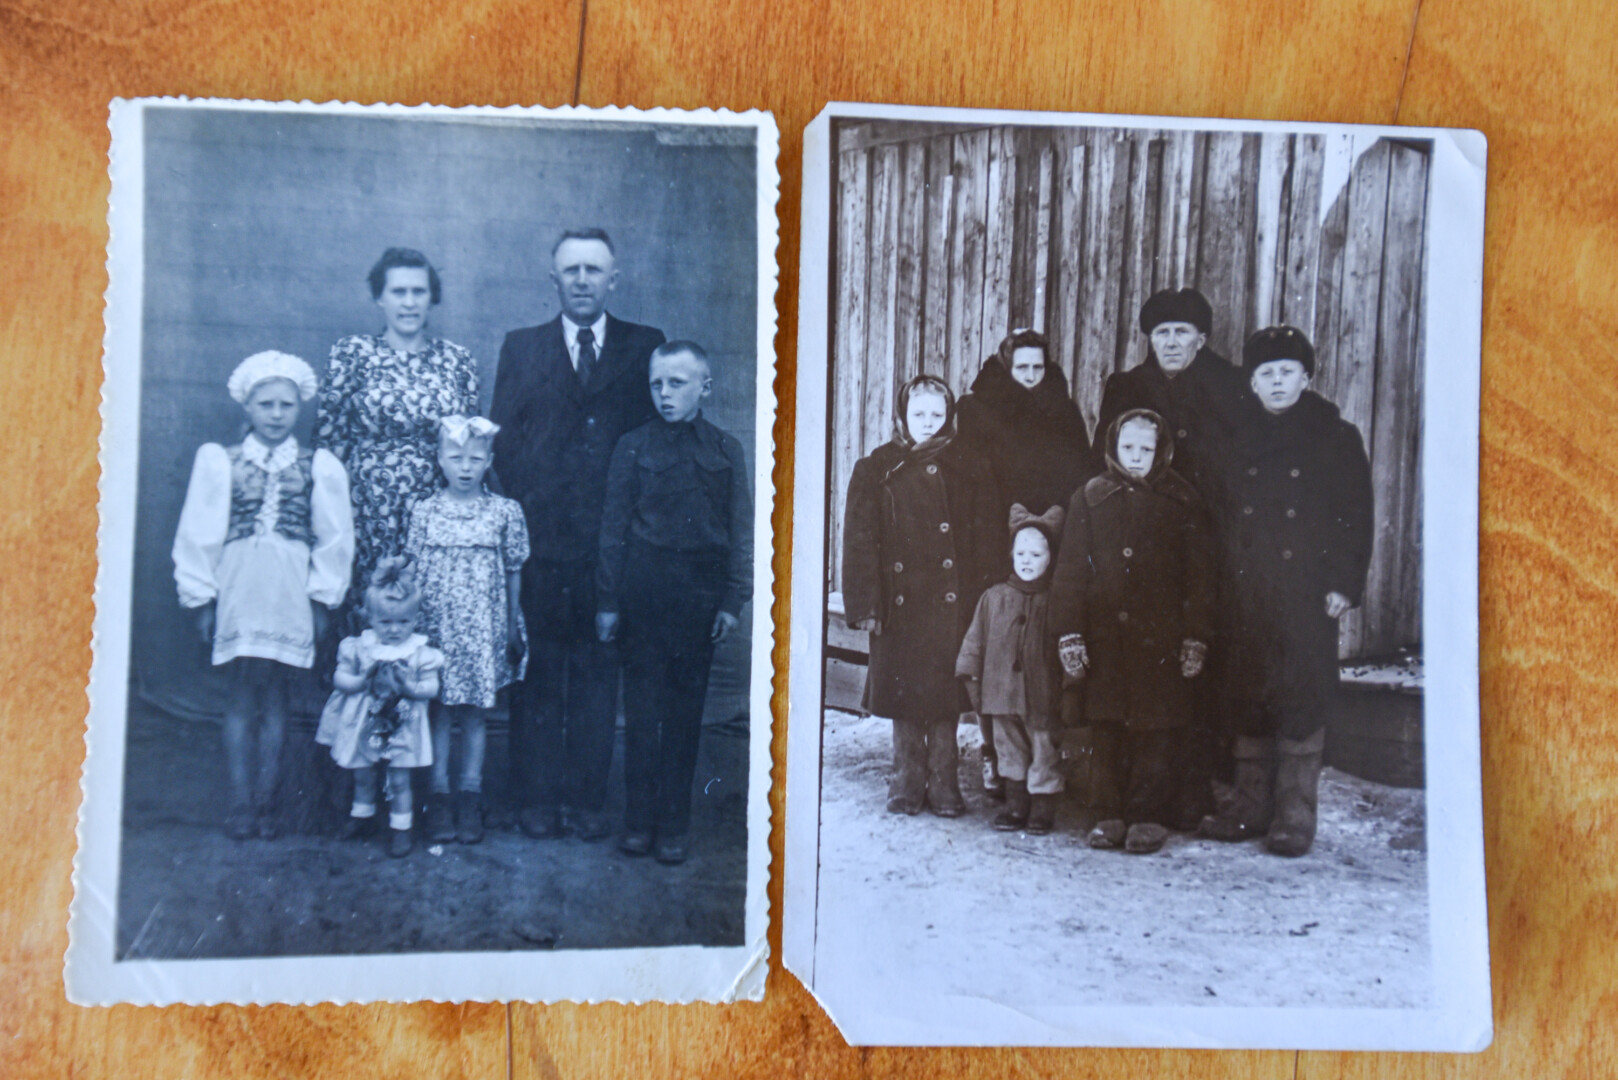 Mokyklą Dalytė pradėjo lankyti ir baigė Sibire. Joje teko kalbėti rusiškai, tačiau namuose mama griežtai reikalavo bendrauti tik lietuviškai. ASMENINIO ALBUMO nuotr.